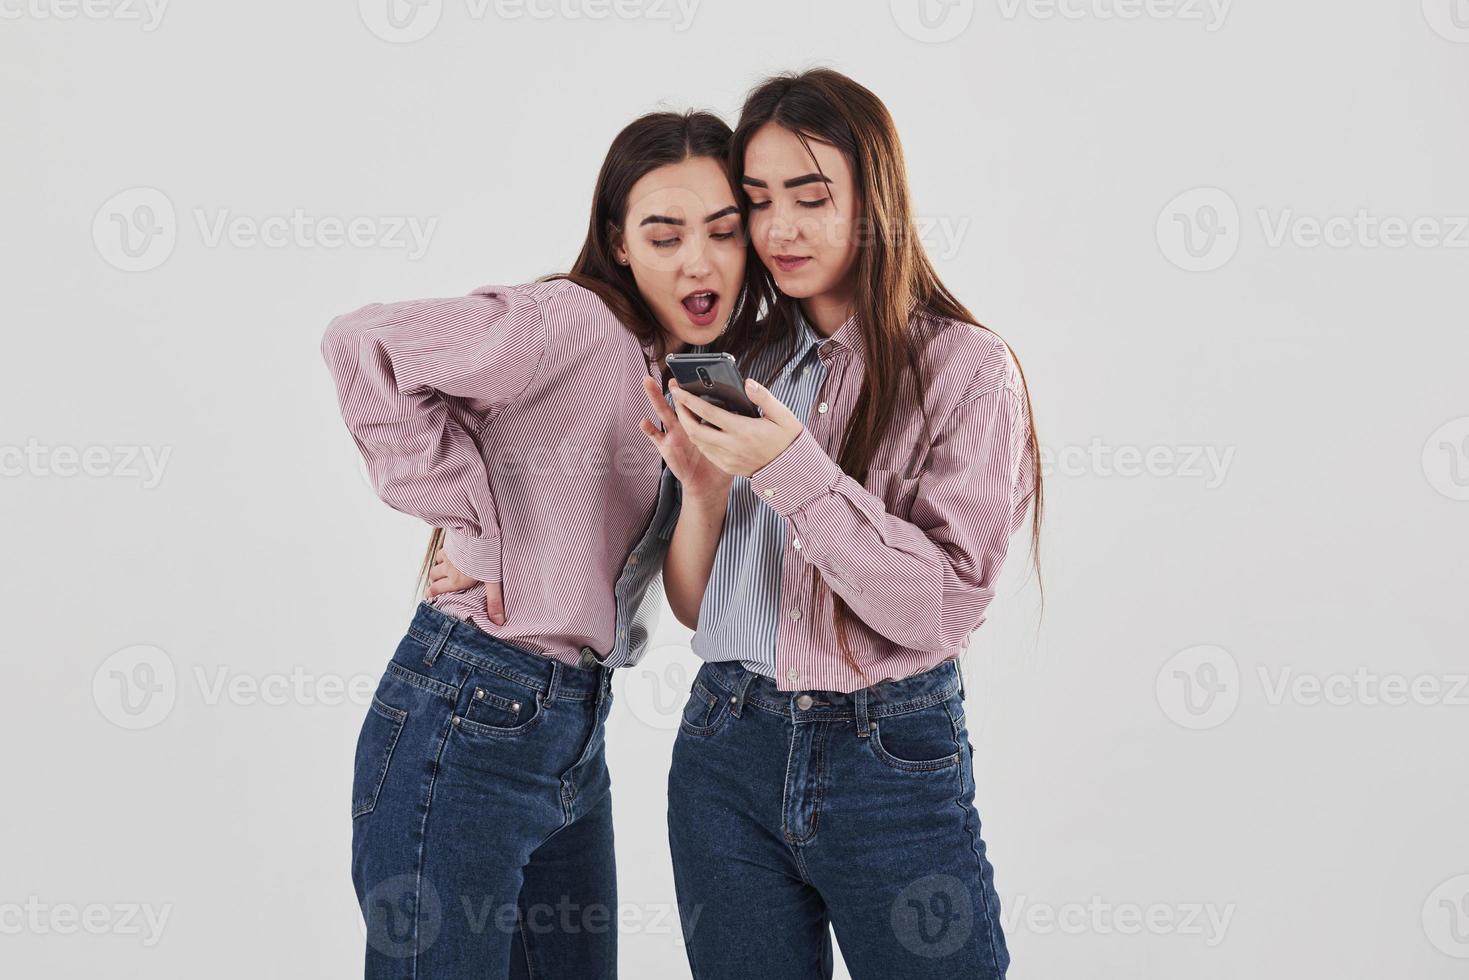 algum conteúdo interessante em seus telefones. compartilhando com segredos. duas irmãs gêmeas em pé e posando no estúdio com fundo branco foto